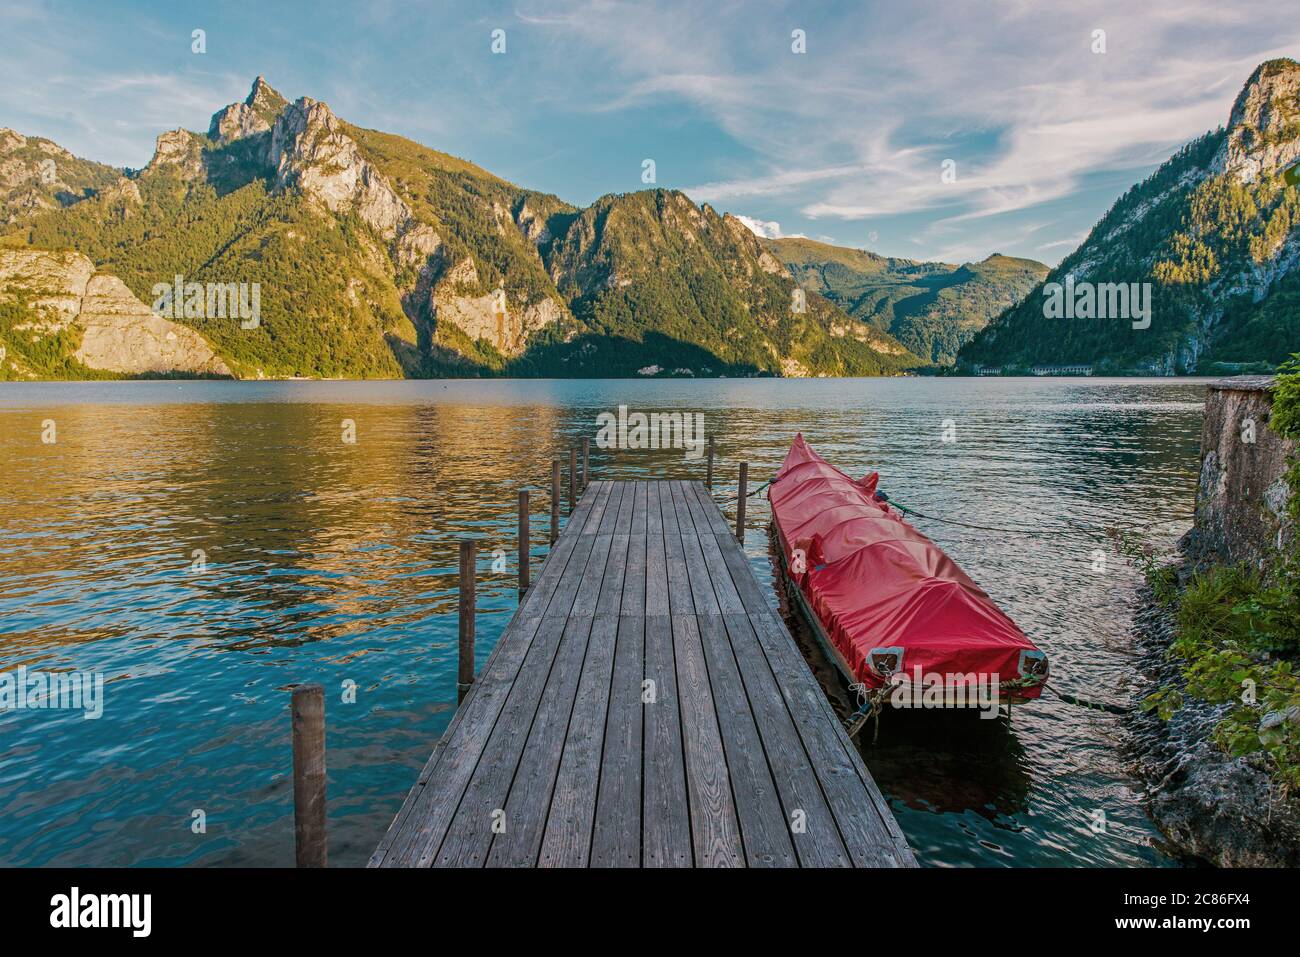 Holzterrasse, Rocky Cliffs, üppige Berge und malerische Dörfer umgeben von diesem weitläufigen, tiefen Wasser Traunsee See. Region Oberösterreich, Europa. Stockfoto